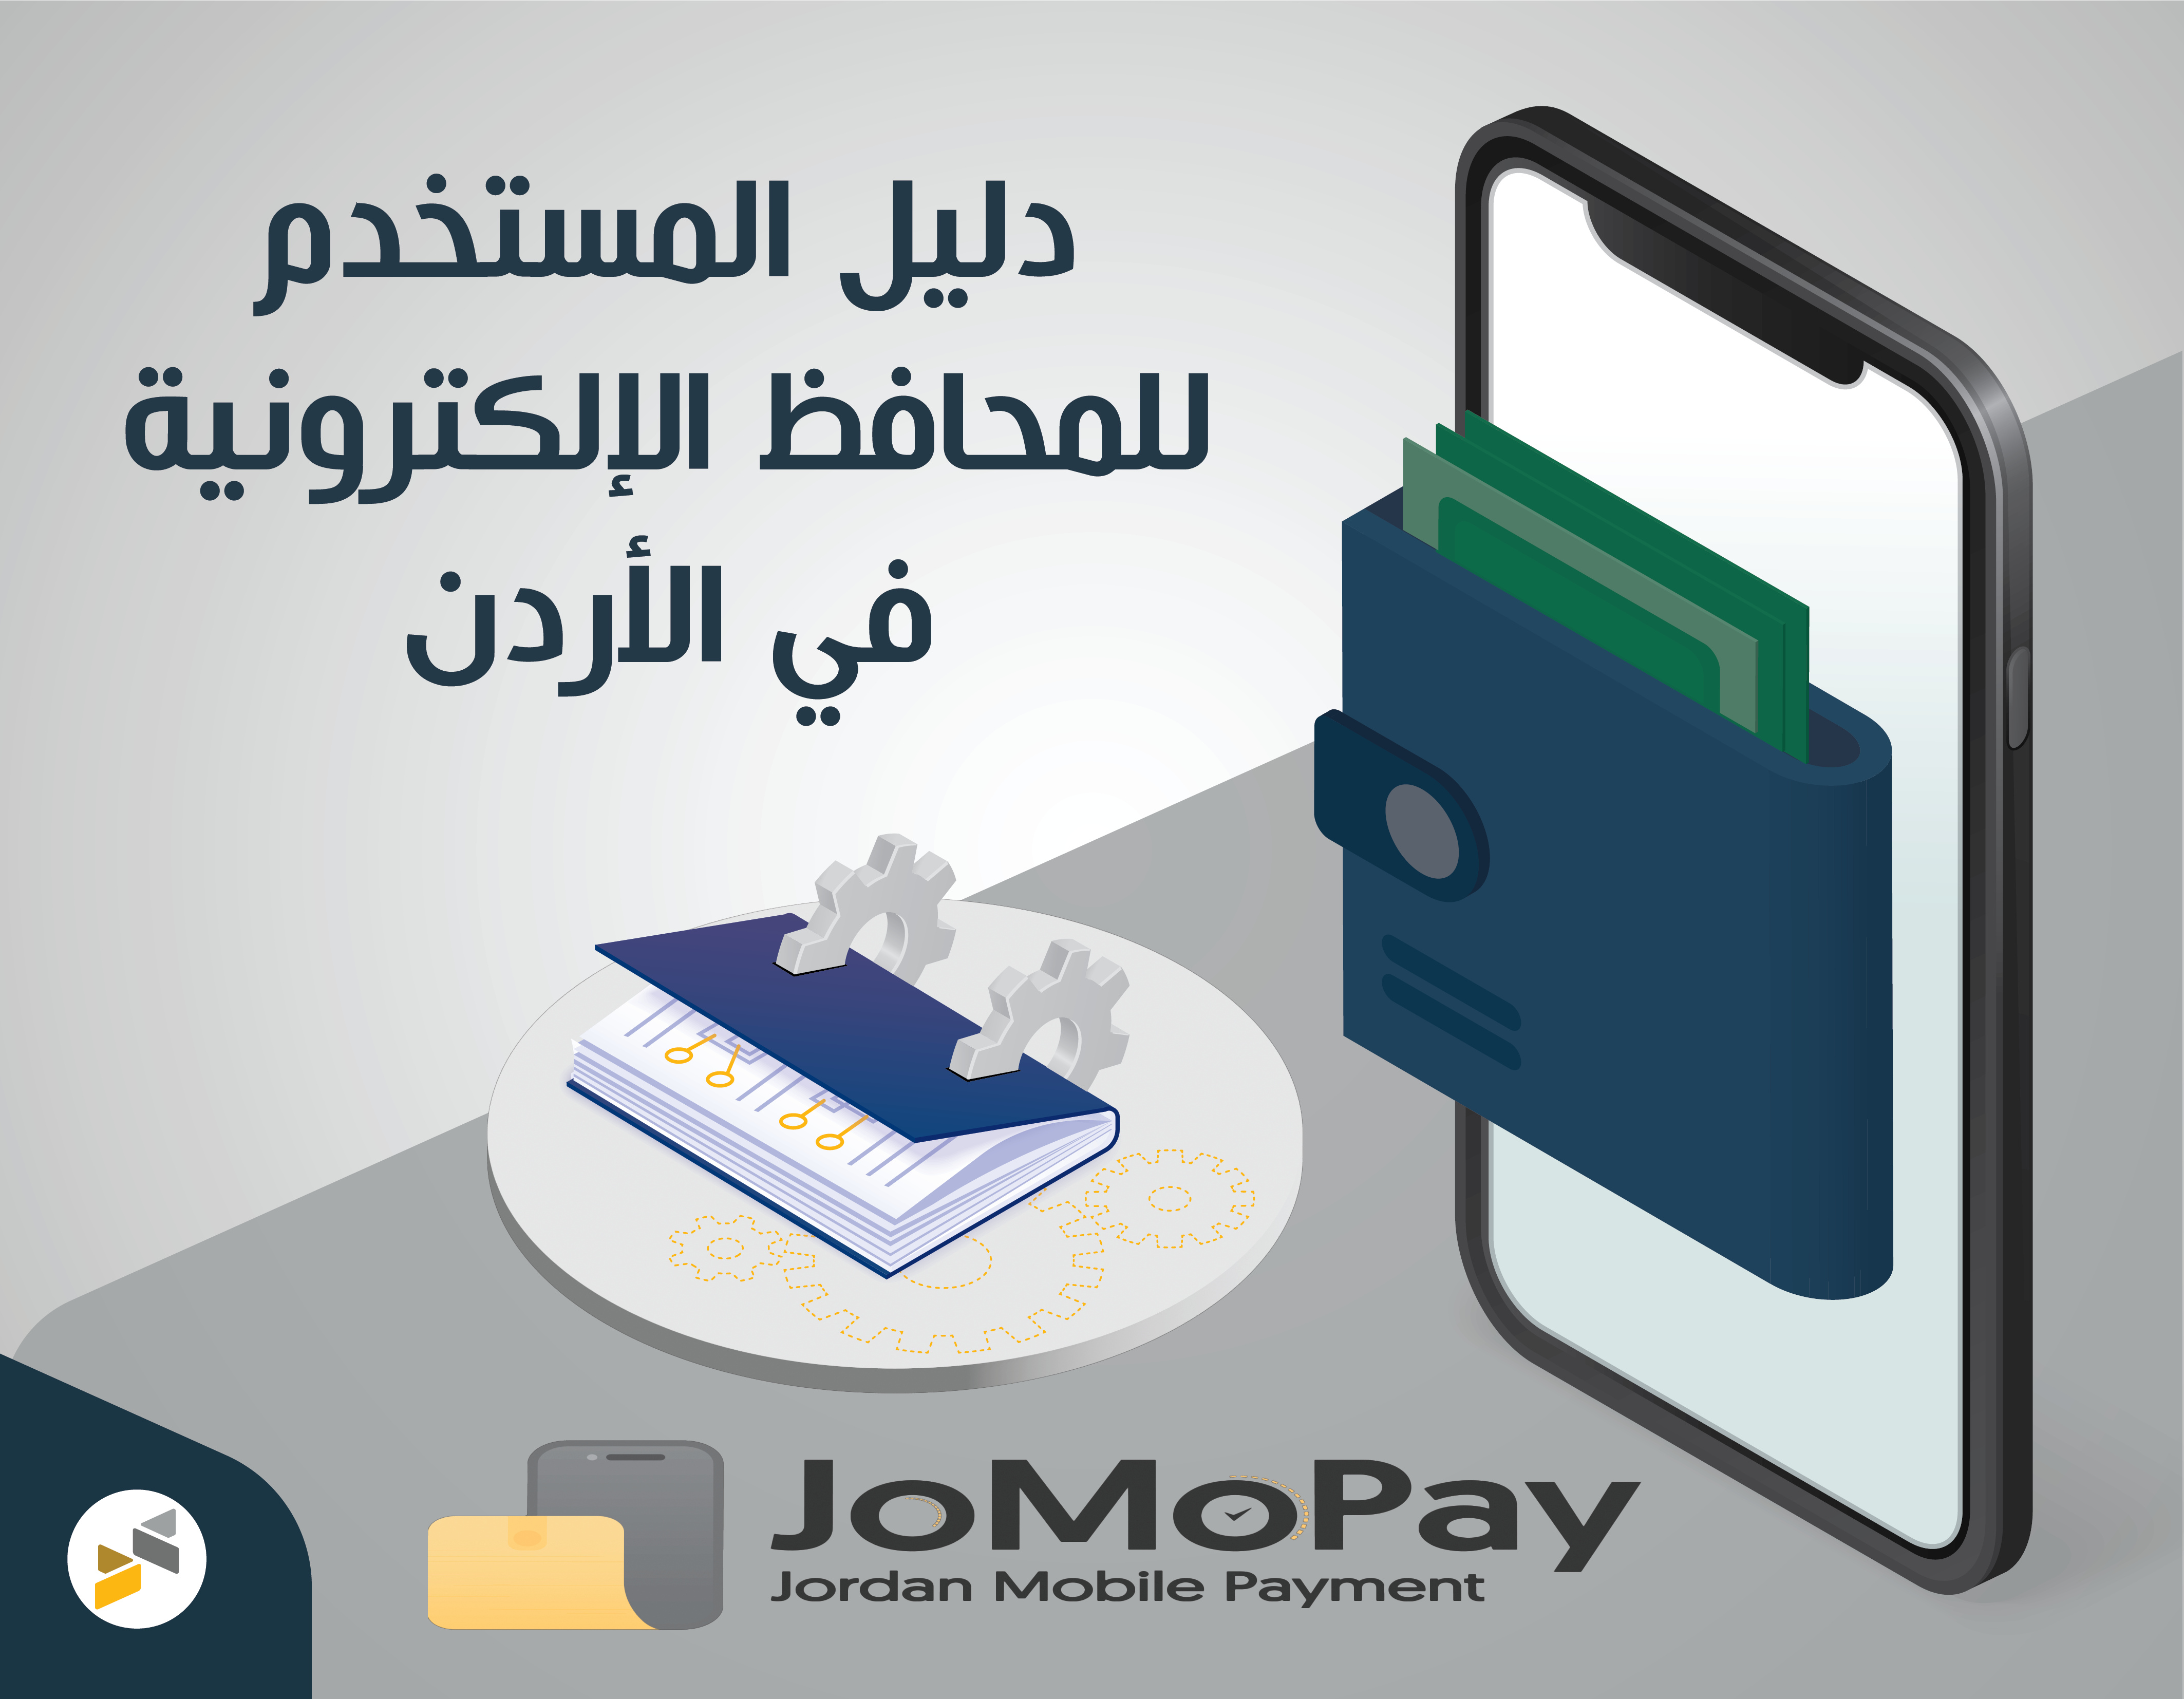 دليل المستخدم للمحافظ الإلكترونية في الأردن